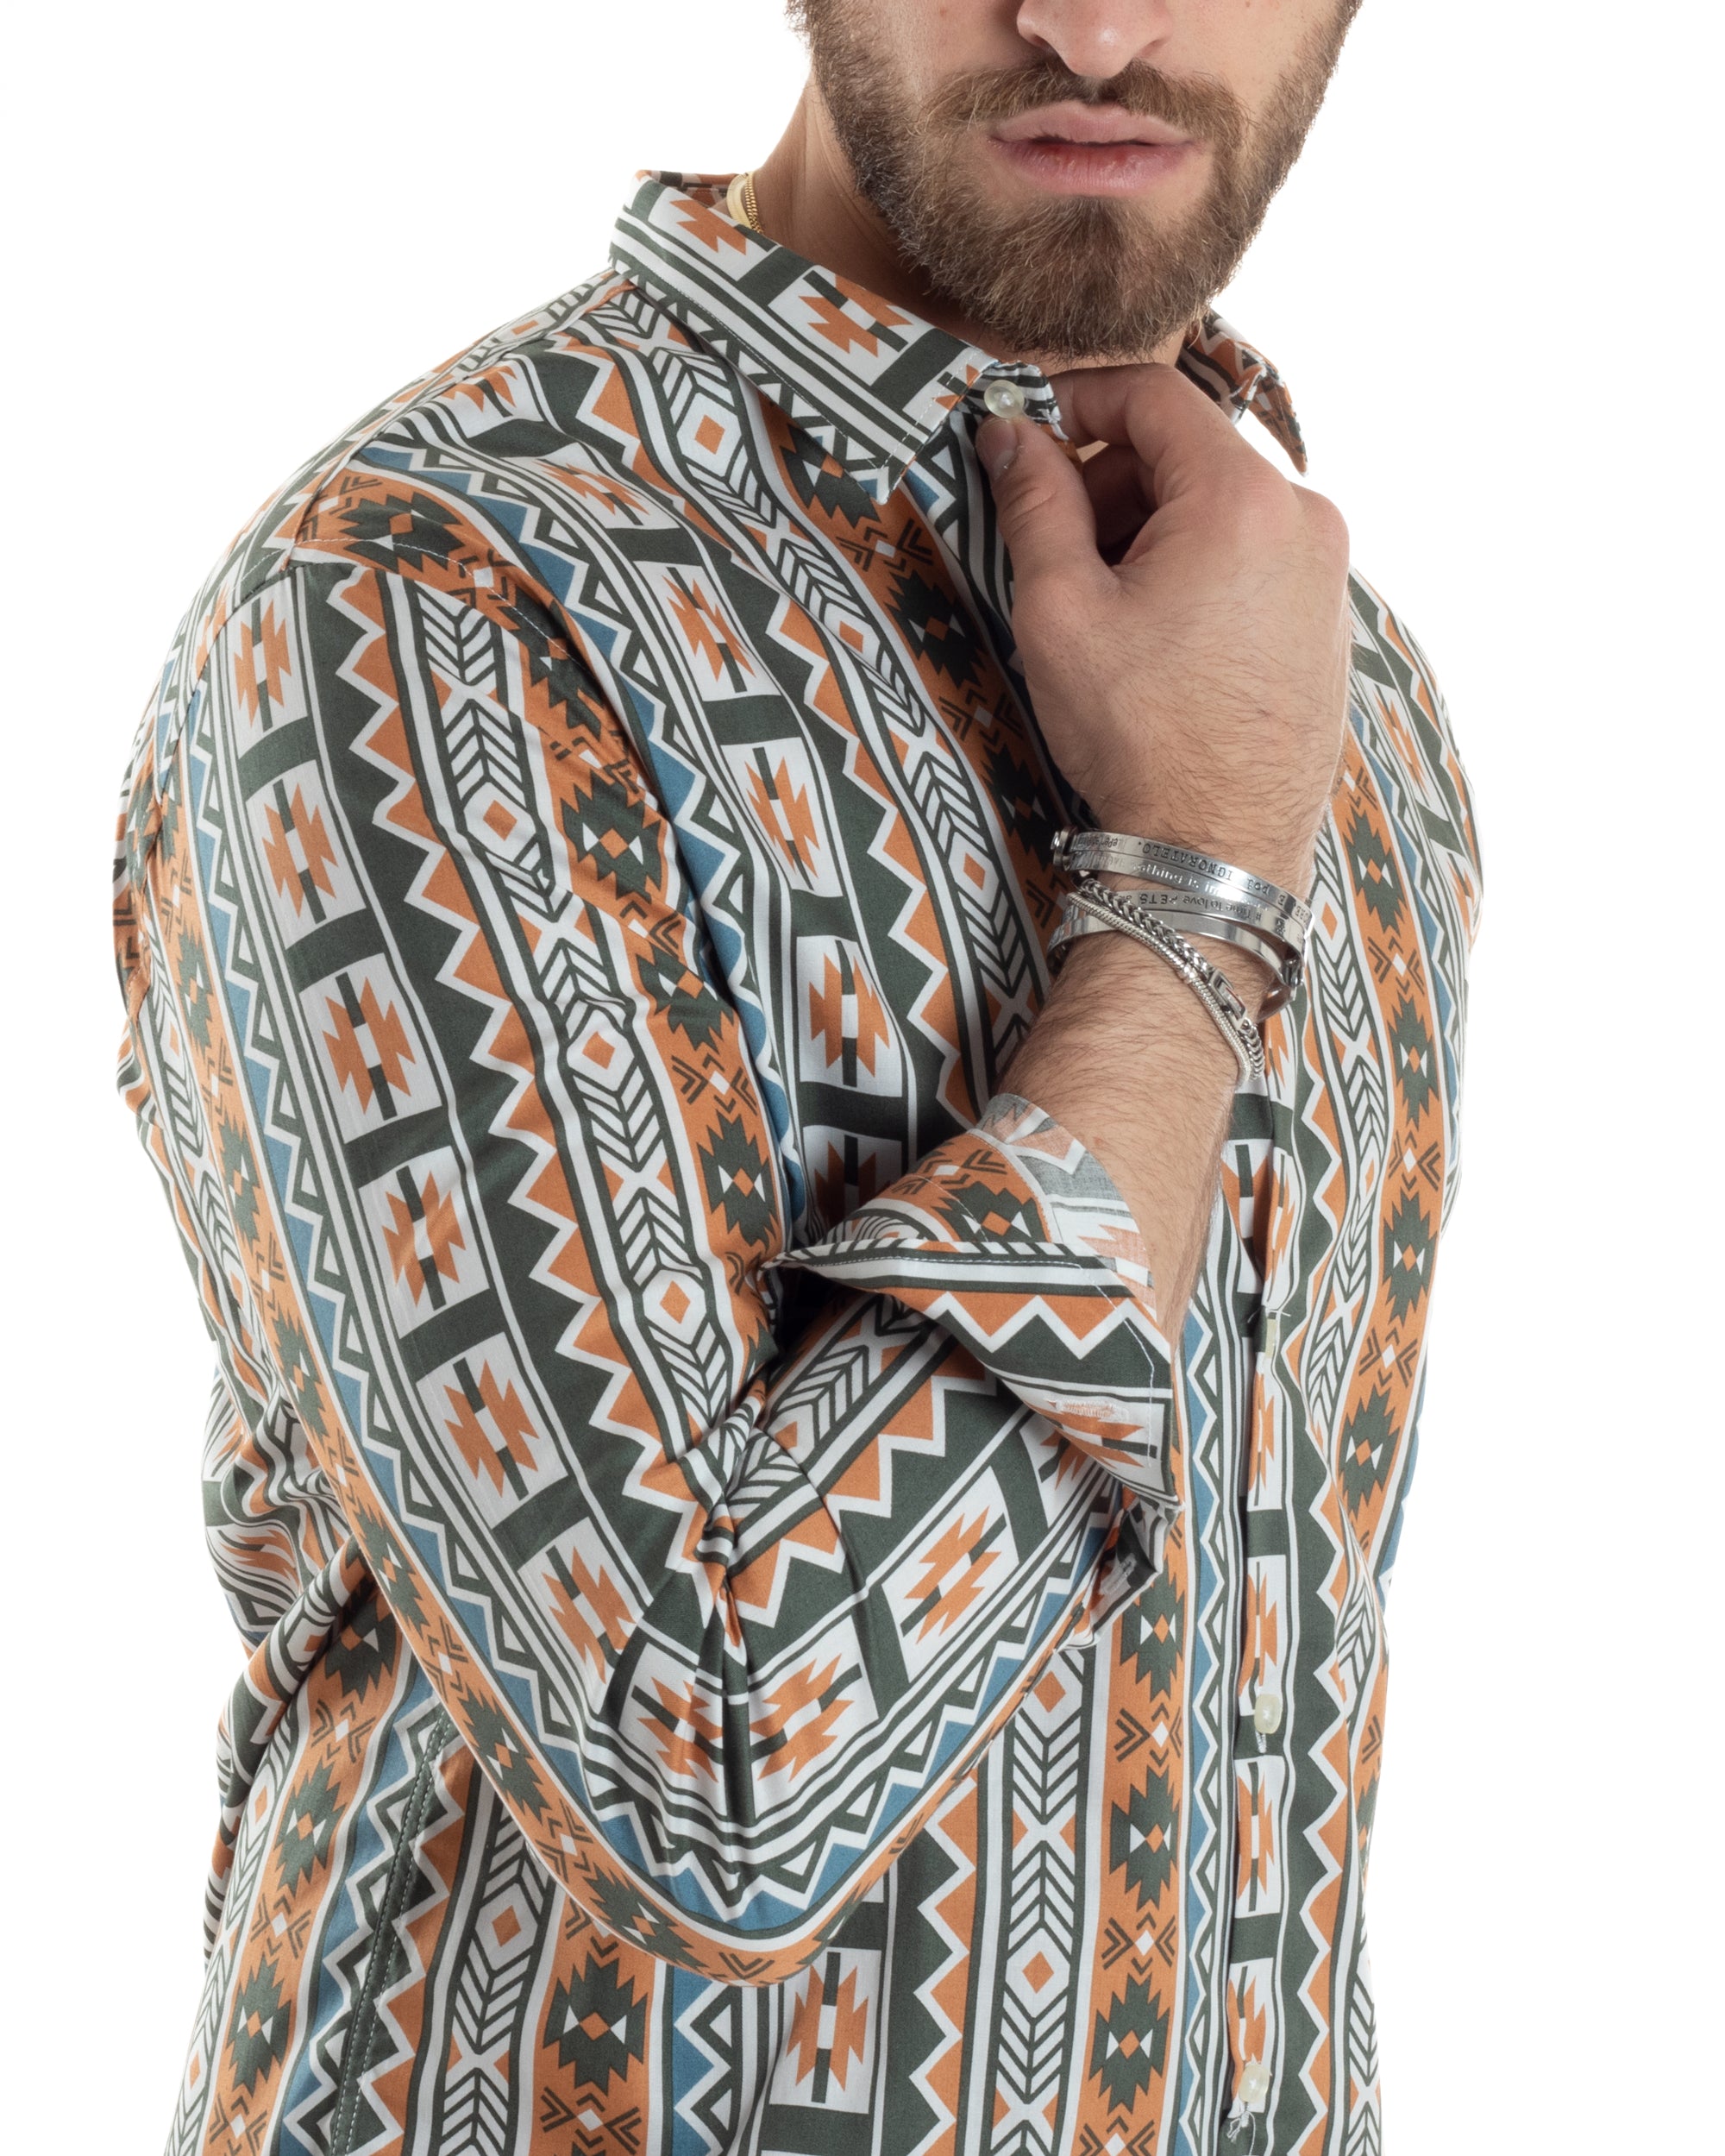 Camicia Uomo Con Colletto Manica Lunga Regular Fit Multicolore Fantasia Etnica GIOSAL-C2859A